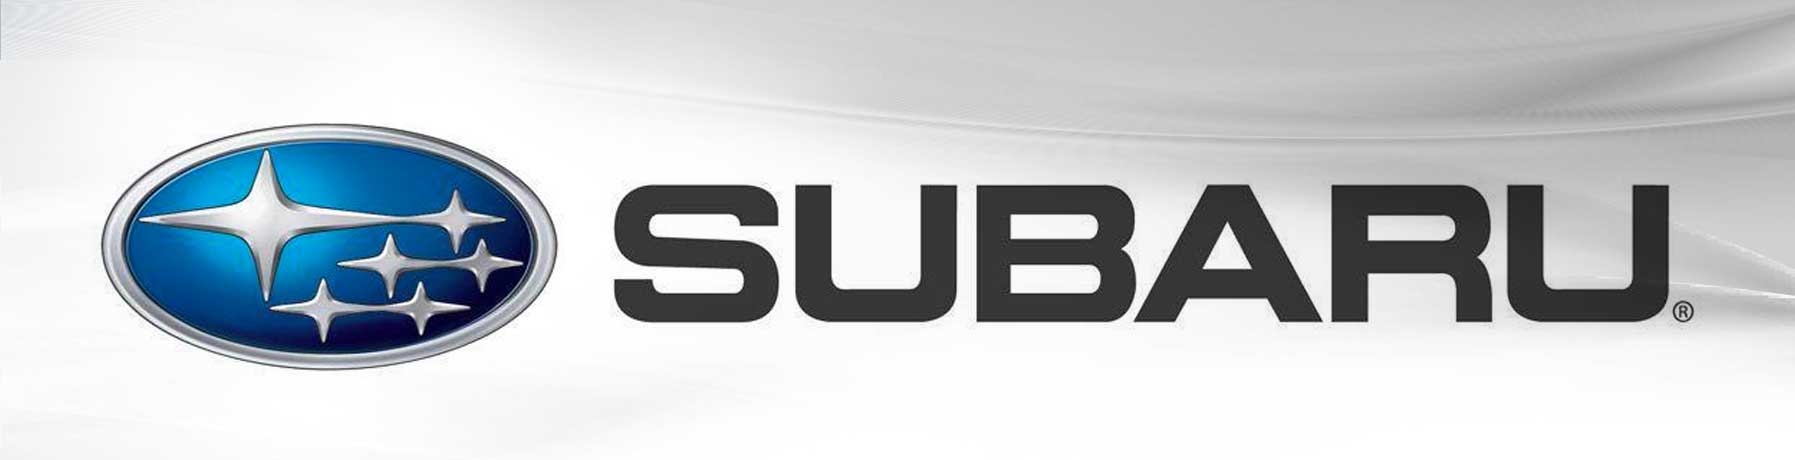 We service Subaru